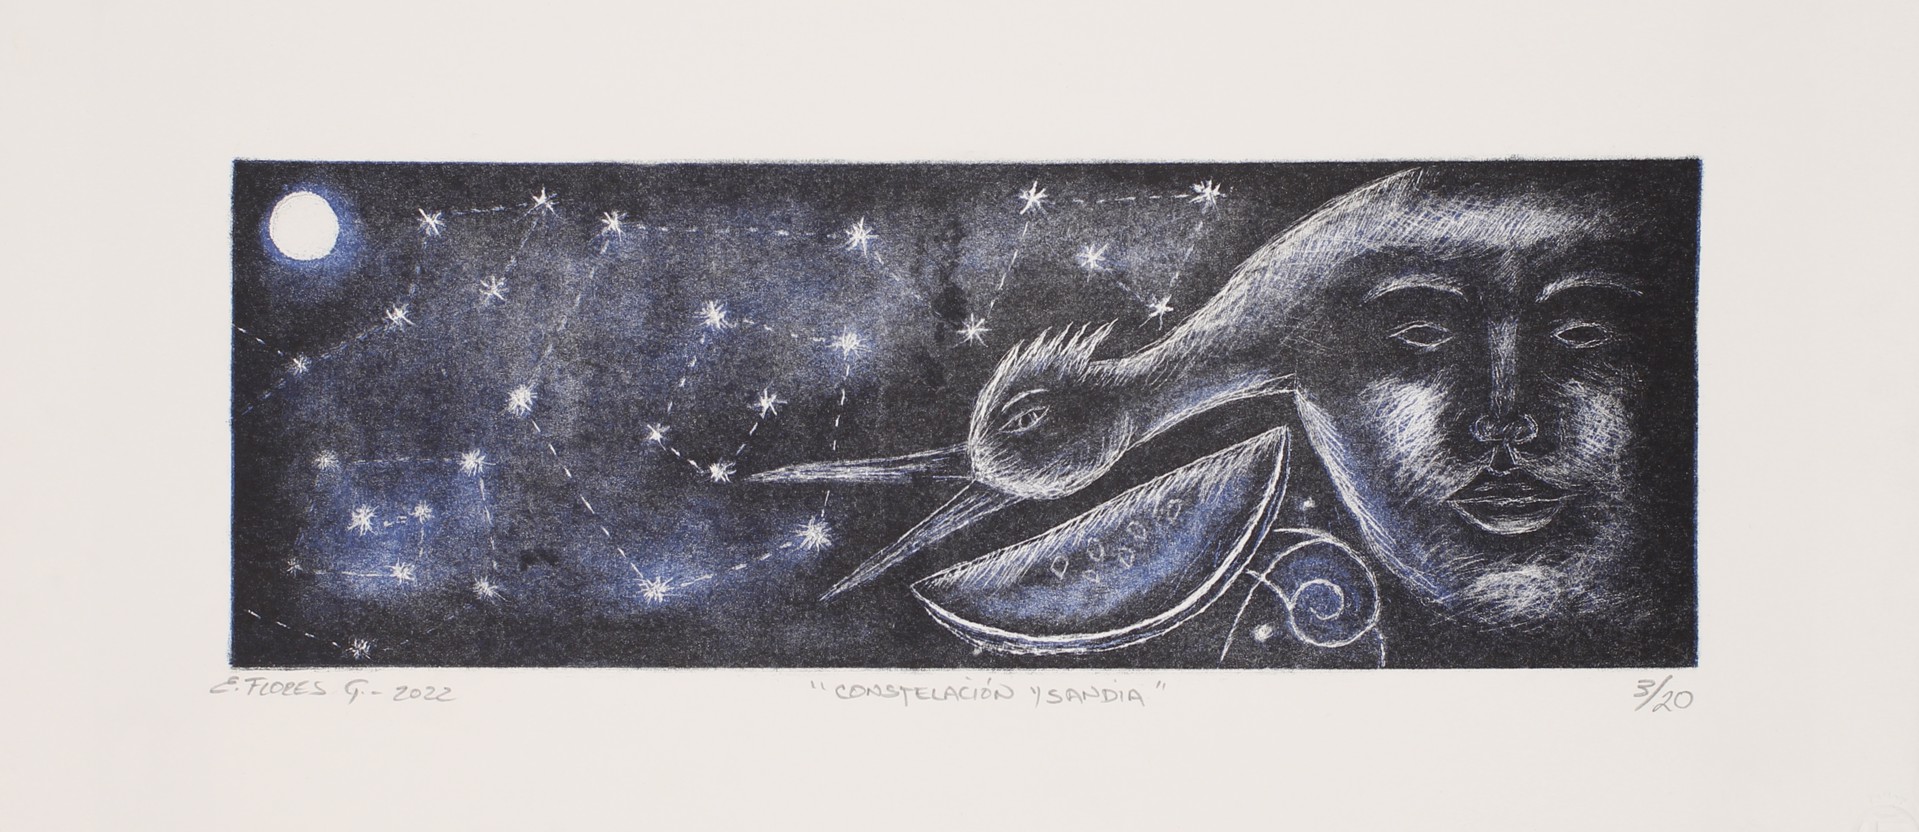 Constelacion y Sandia by Enrique Flores